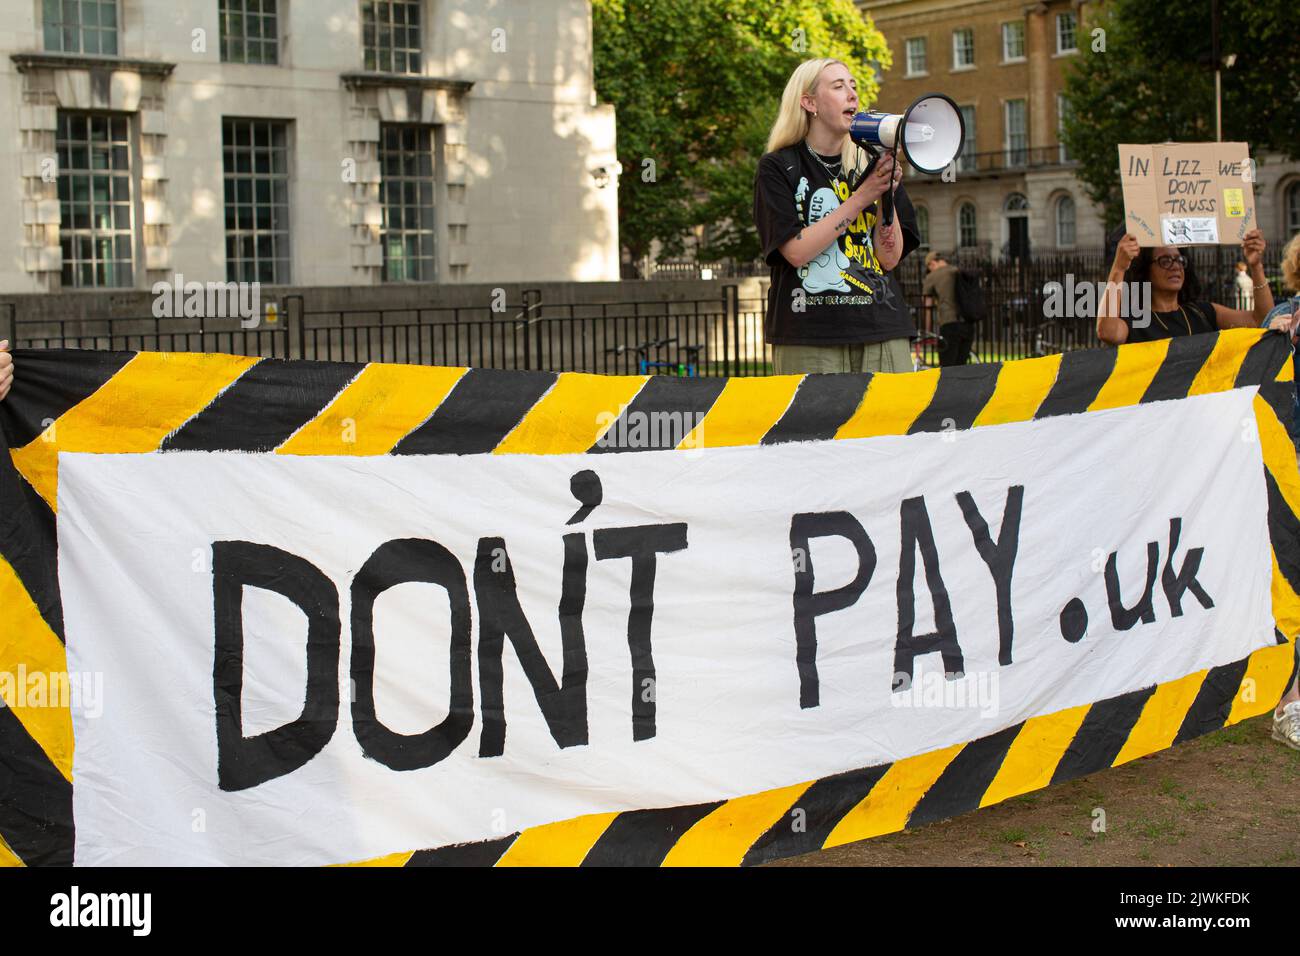 Londra, Regno Unito. 5 SET, 2022. Protesta contro “Do’t Pay UK” al di fuori di Downing Street, movimento contro l’enorme aumento delle bollette energetiche e la richiesta di un tetto massimo ai prezzi. Foto Stock